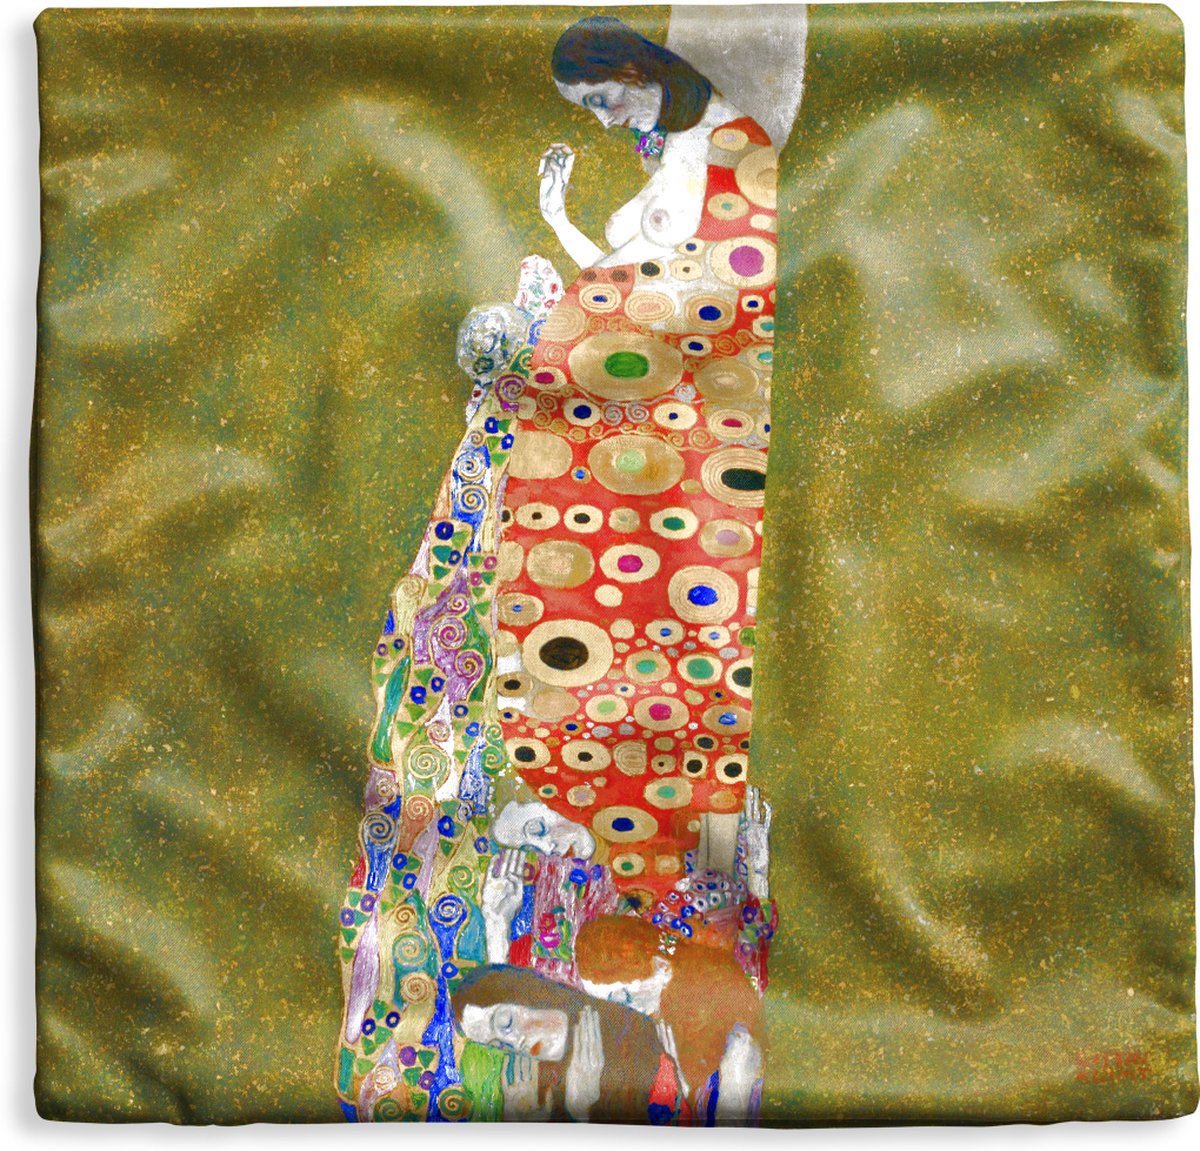 Housse de coussin 40x40 cm - Espoir II - Gustav Klimt - Katoen / Polyester  - Pour